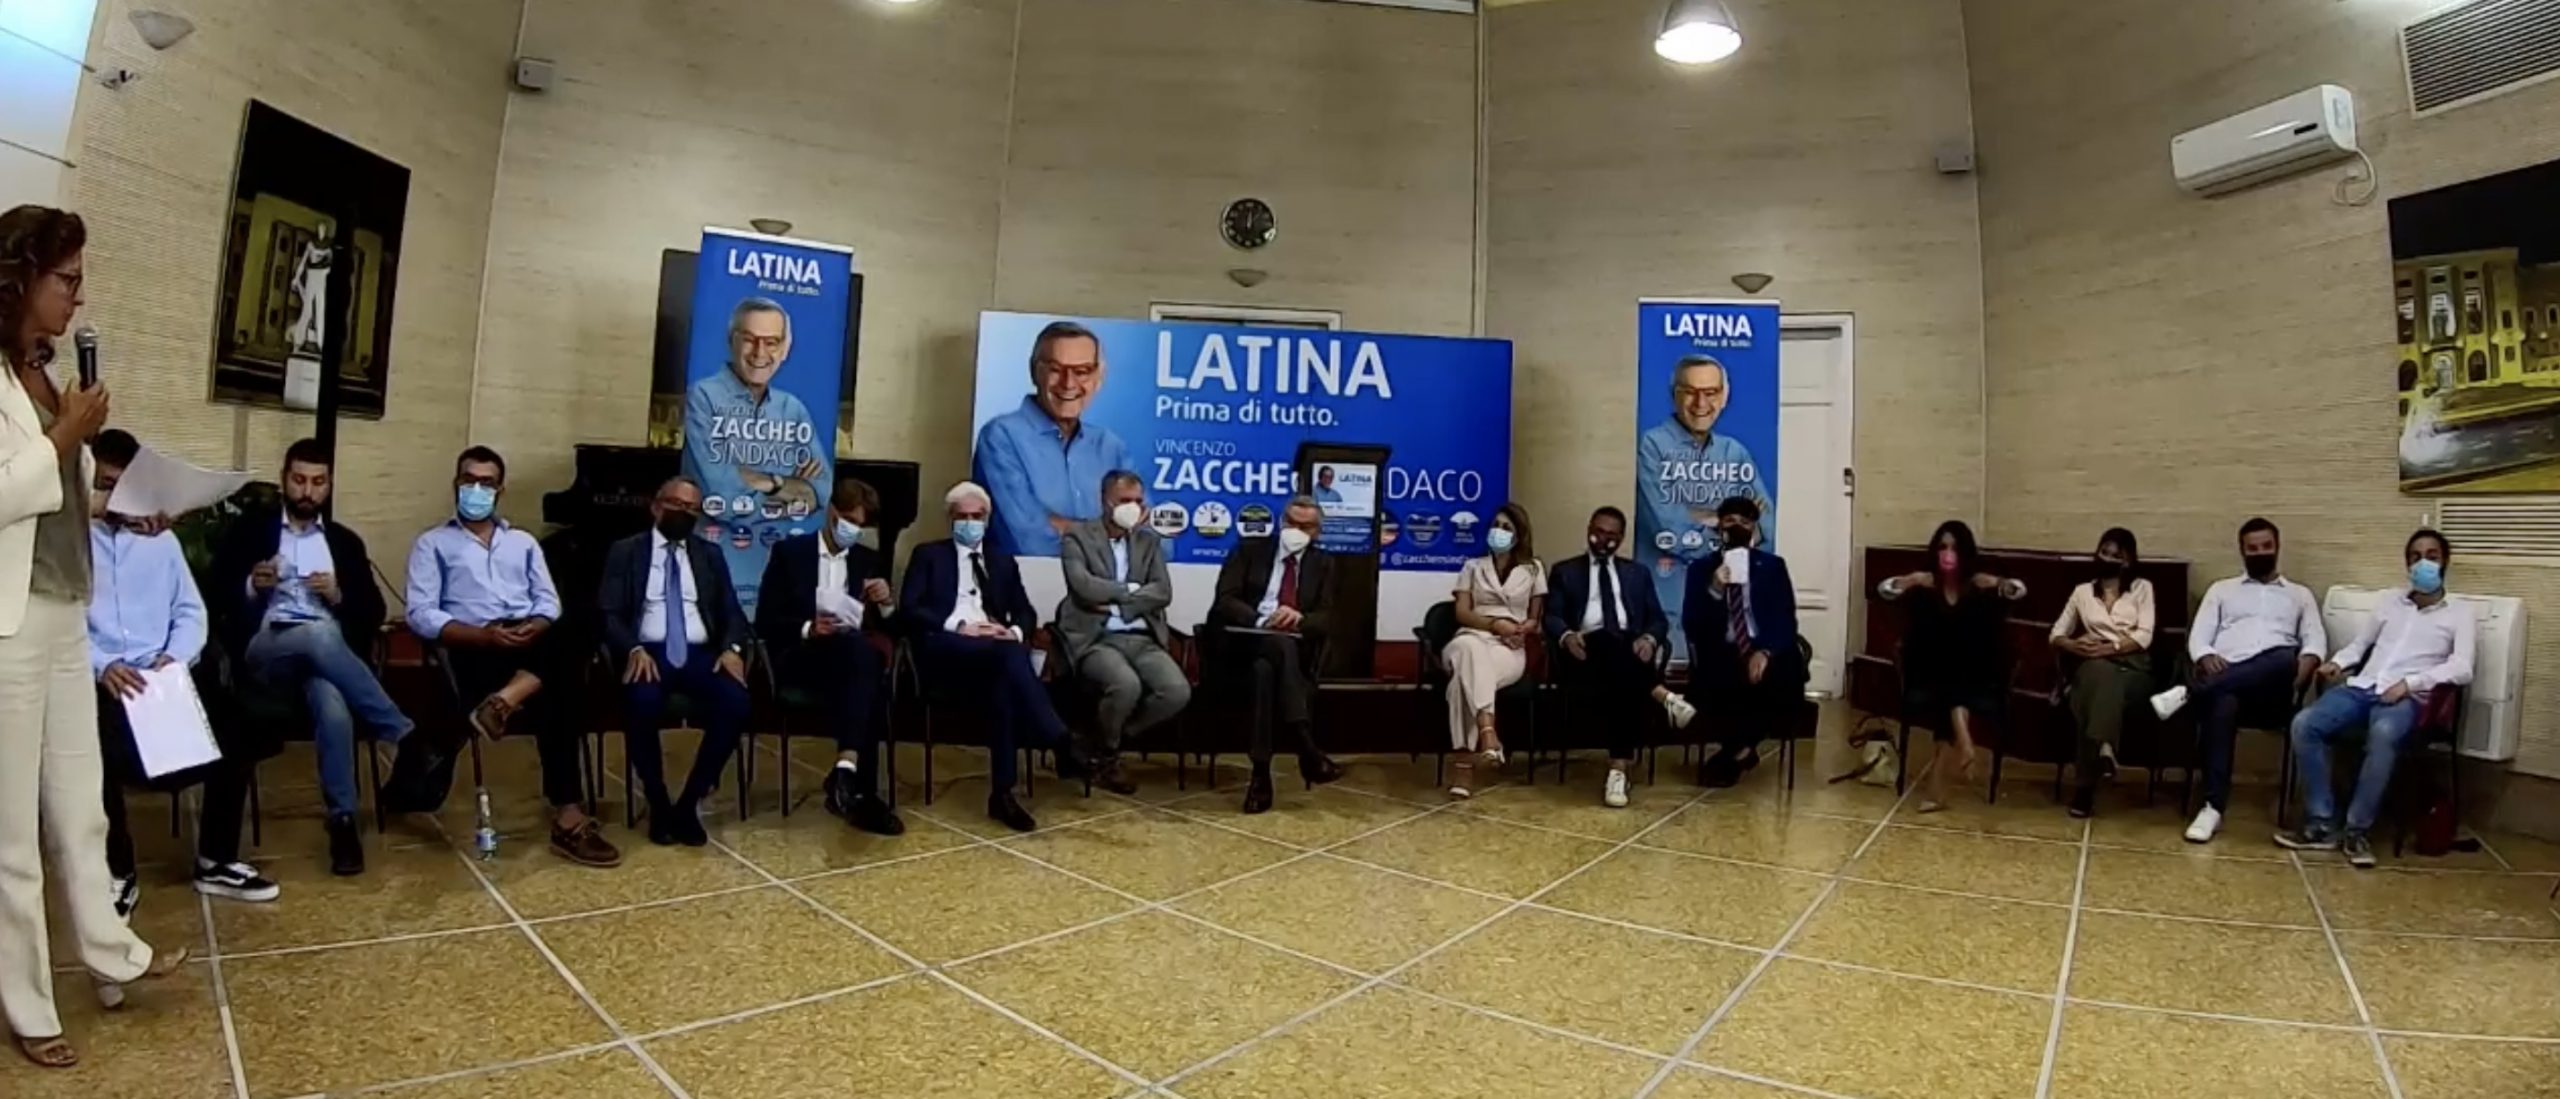 La conferenza stampa dove sono state presentate dalla giornalista Sarina Biraghi le liste a sostegno del candidato Sindaco di Latina Vincenzo Zaccheo